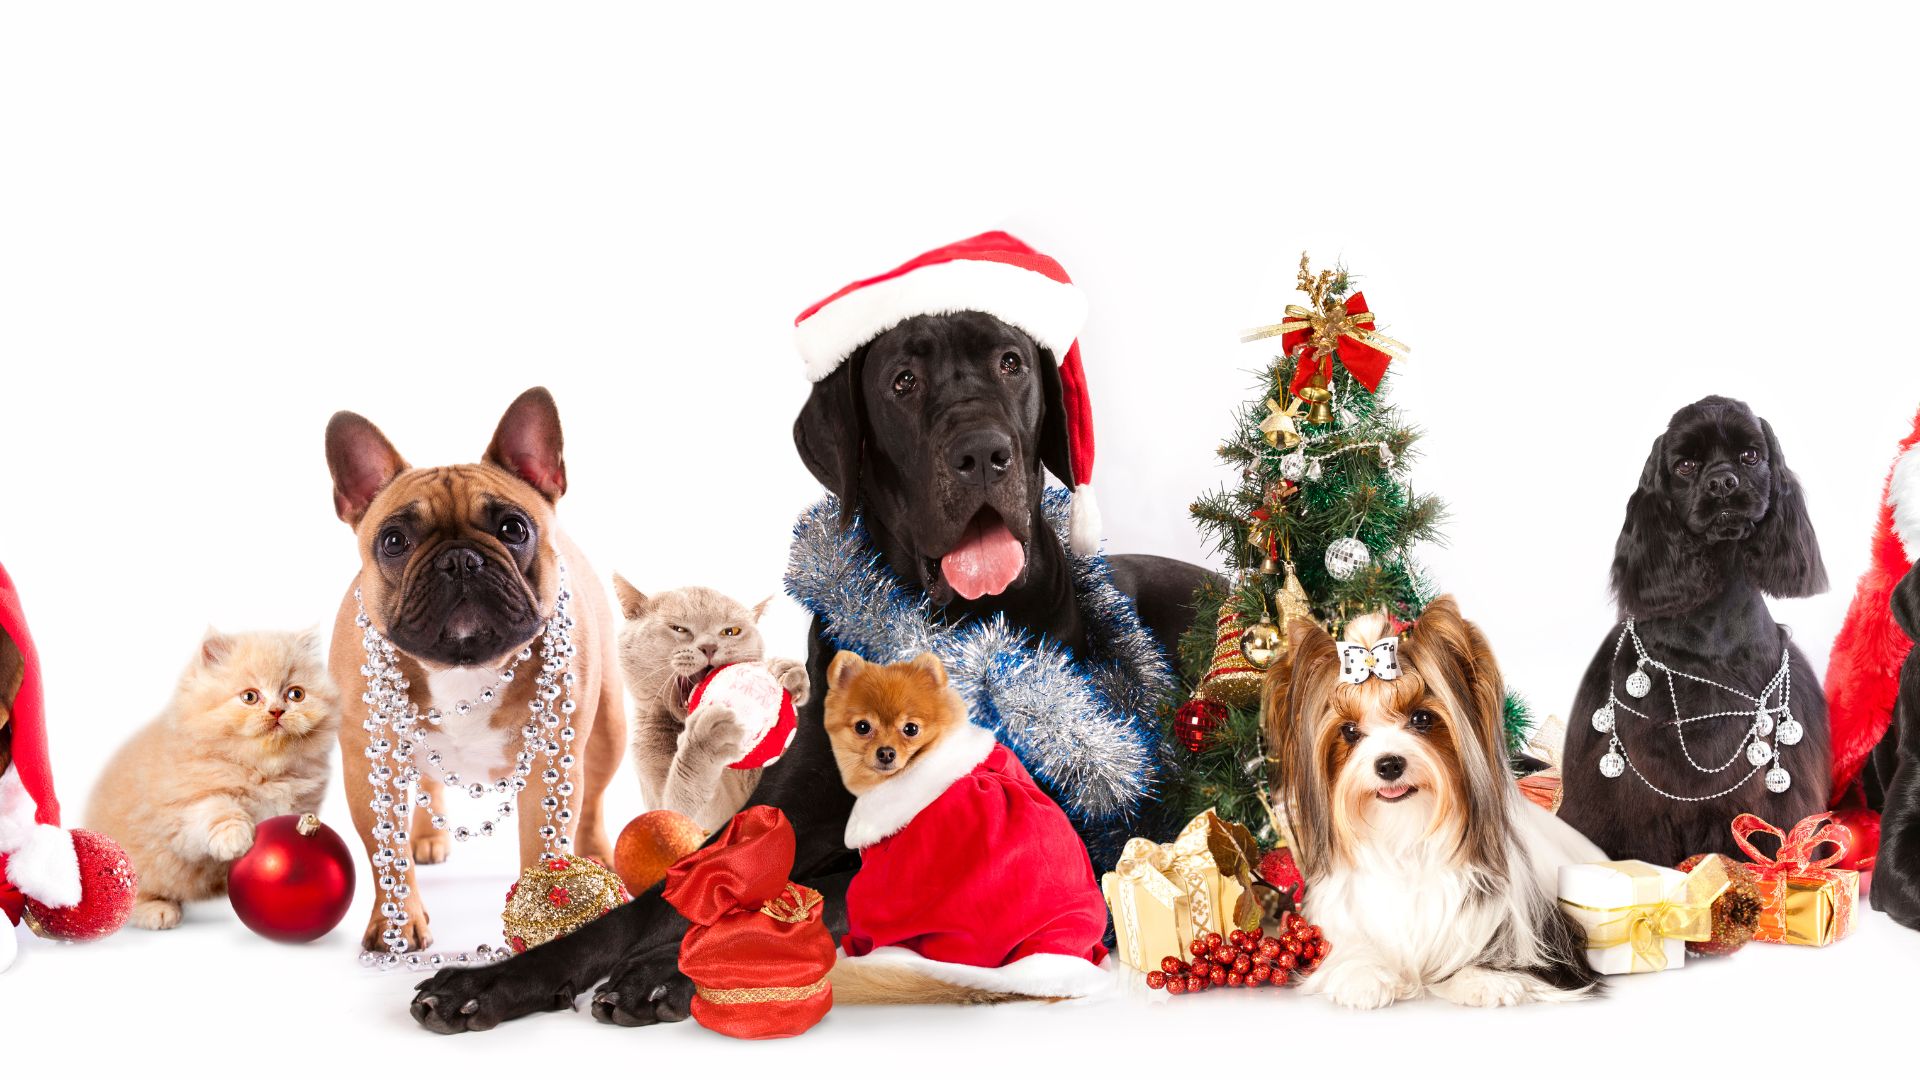 Imagem de fundo branco. Em destaque vários pets (cães e gatos) usando roupas e adereços natalinos. Para completar a imagem, um árvore de natal decorada.